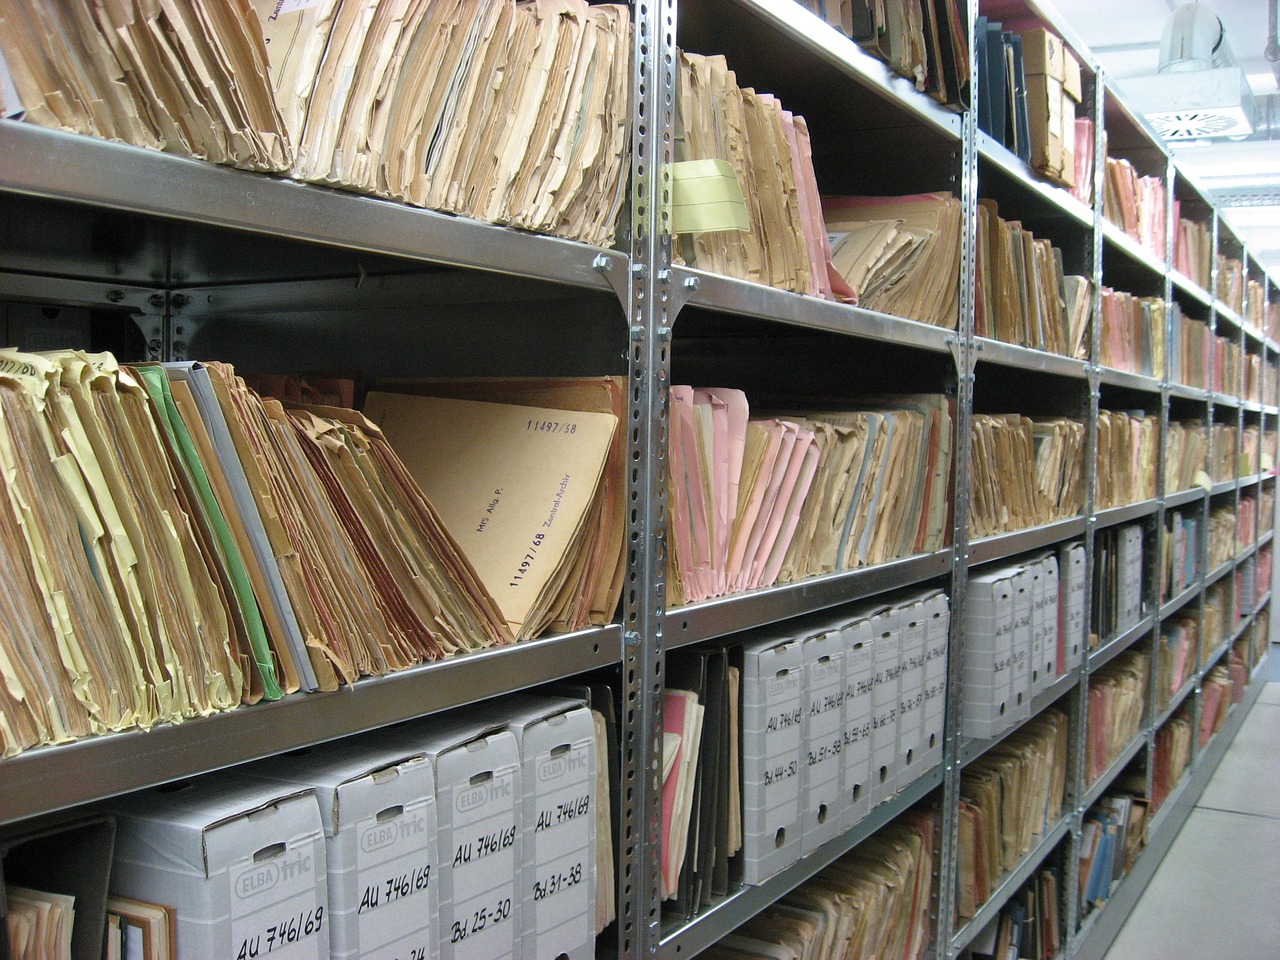 Wyższa emerytura dzięki archiwum. Gdzie szukać dokumentów sprzed lat?